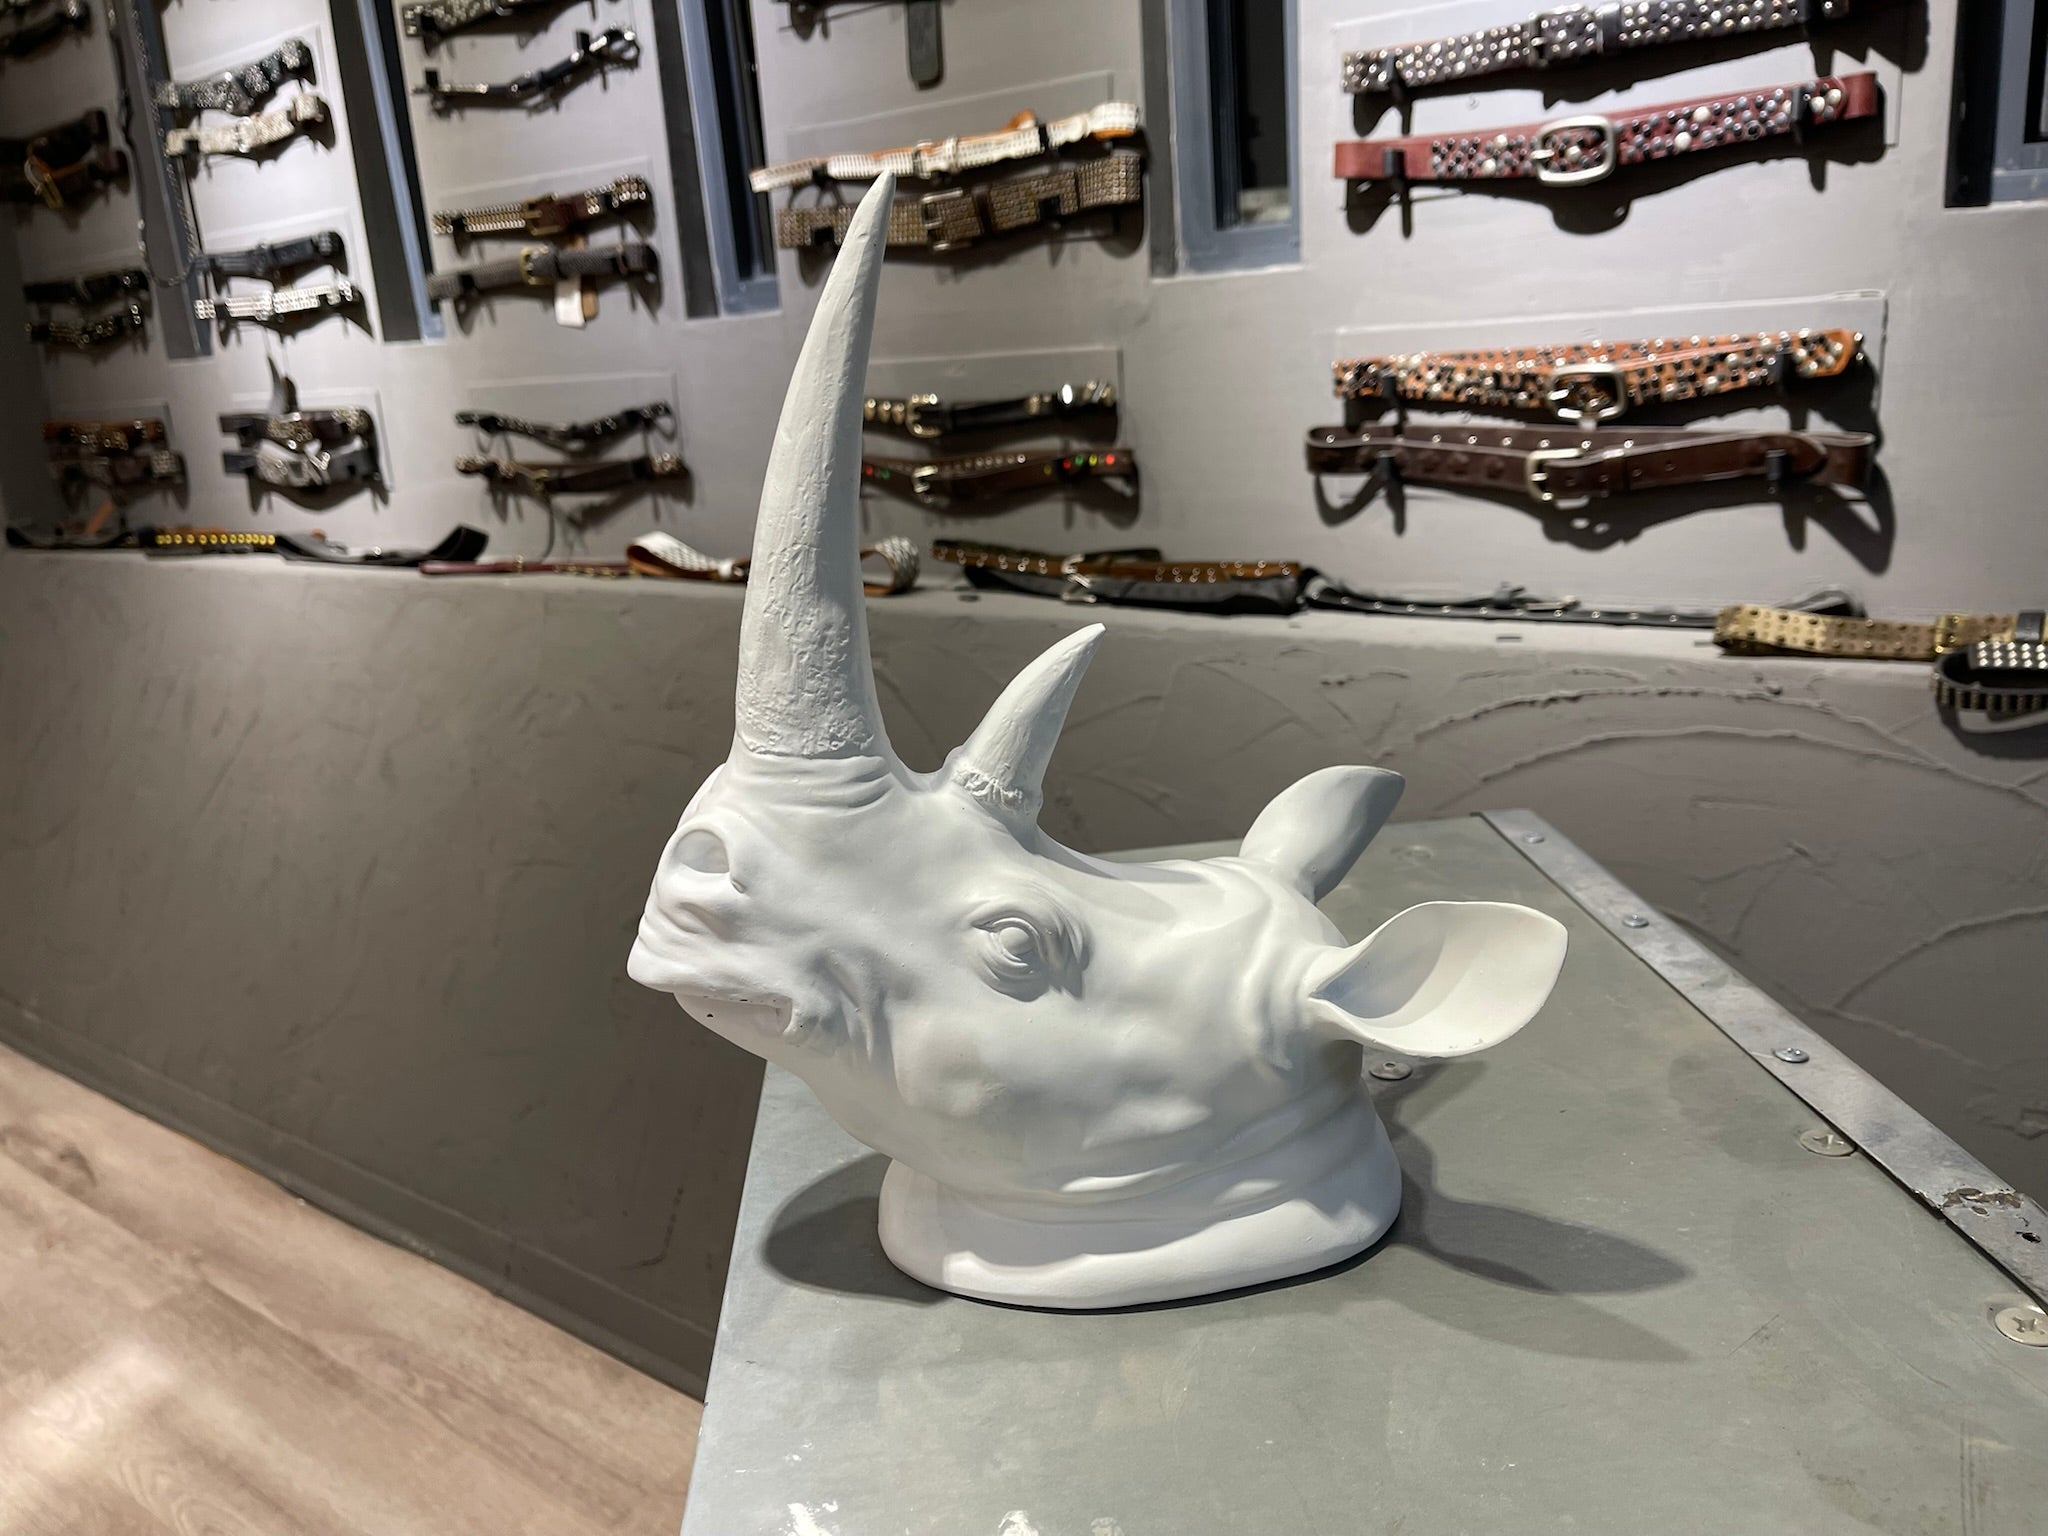 Statua decorativa testa di rinoceronte Bianco